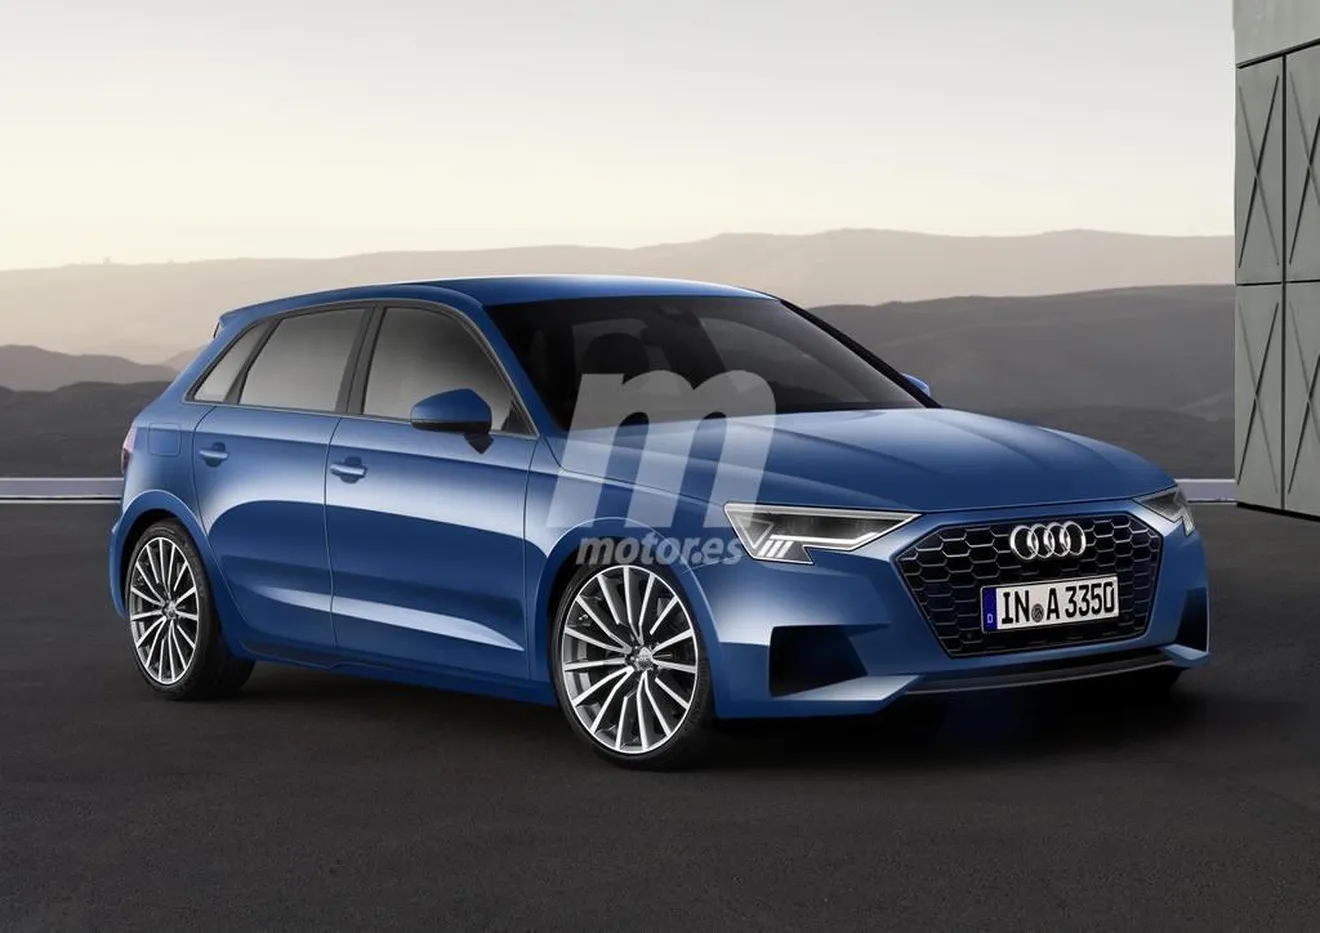 Audi A3 2020, se avecina una revolución tecnológica con la cuarta generación